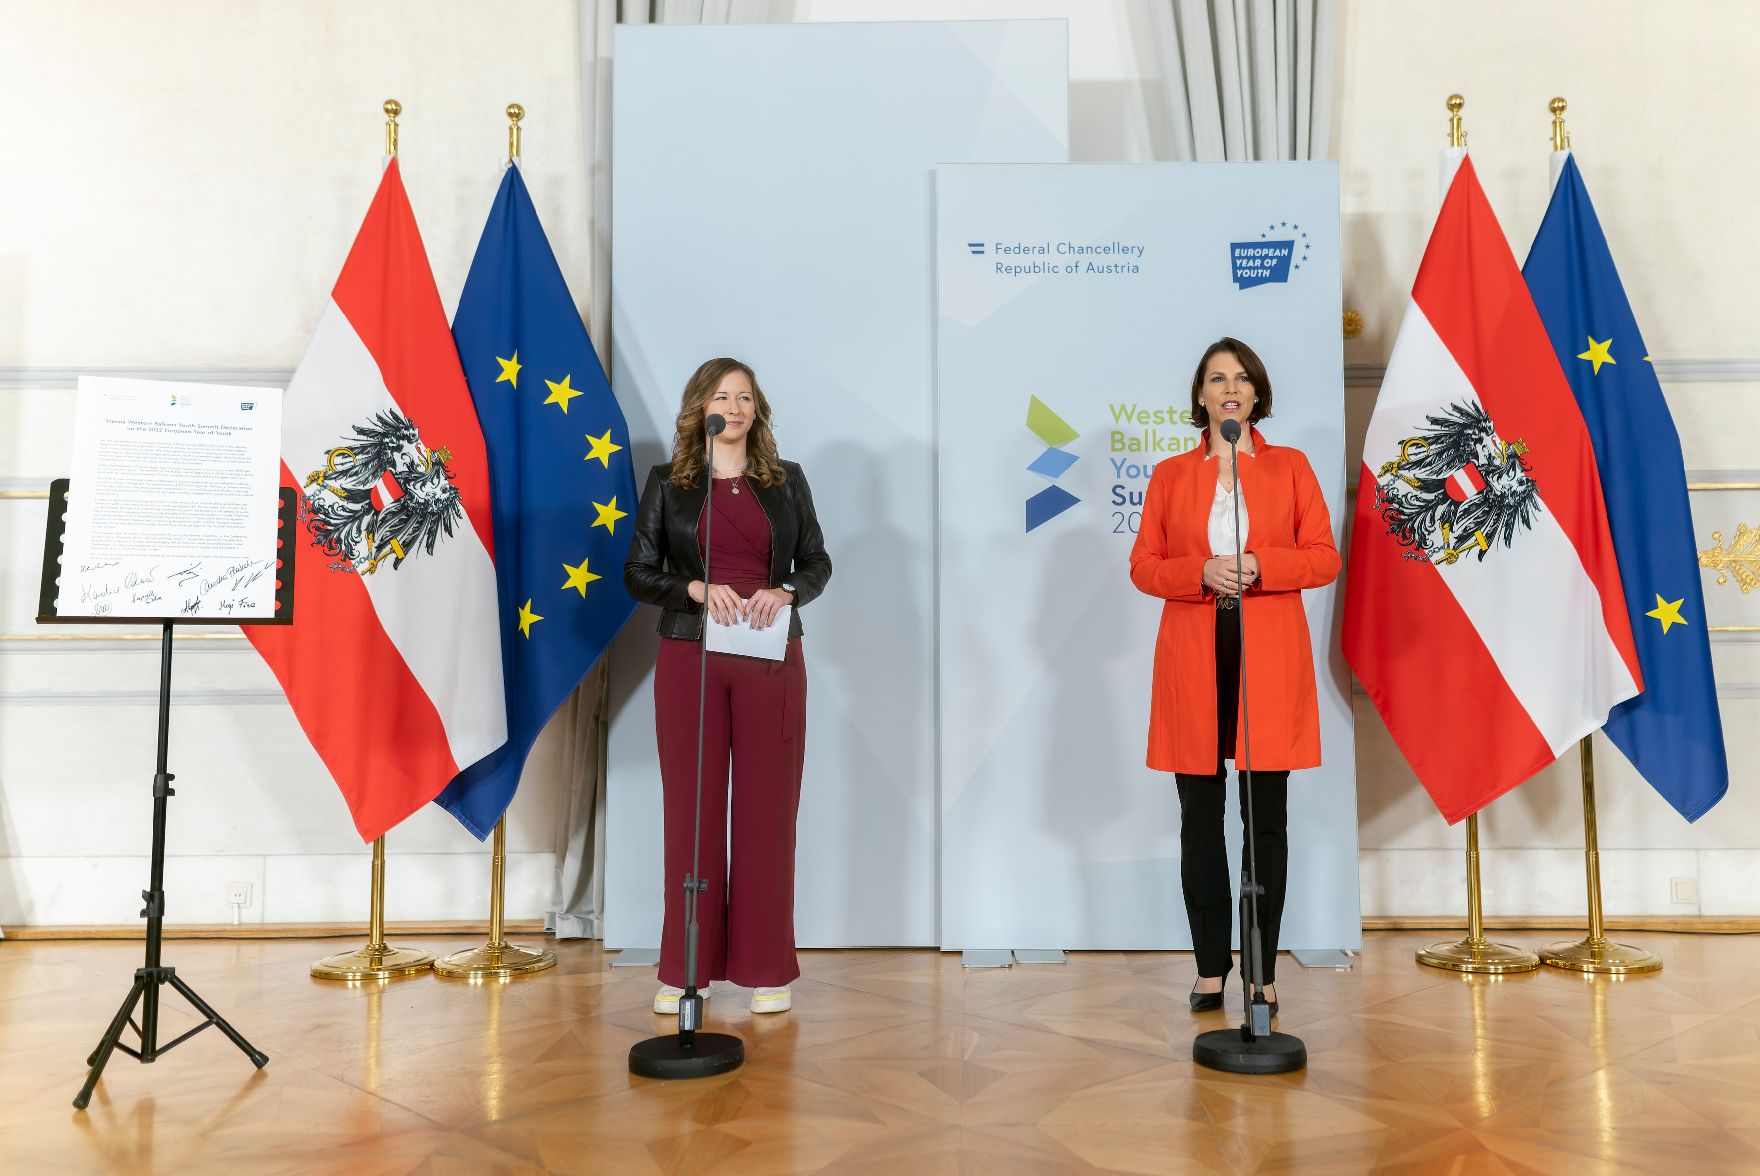 Am 11. November 2022 fand ein Doorstep im Rahmen des Western Balkans Youth Summit statt. Im Bild Bundesministerin Karoline Edtstadler (r.) und Staatssekretärin Claudia Plakolm (l.).